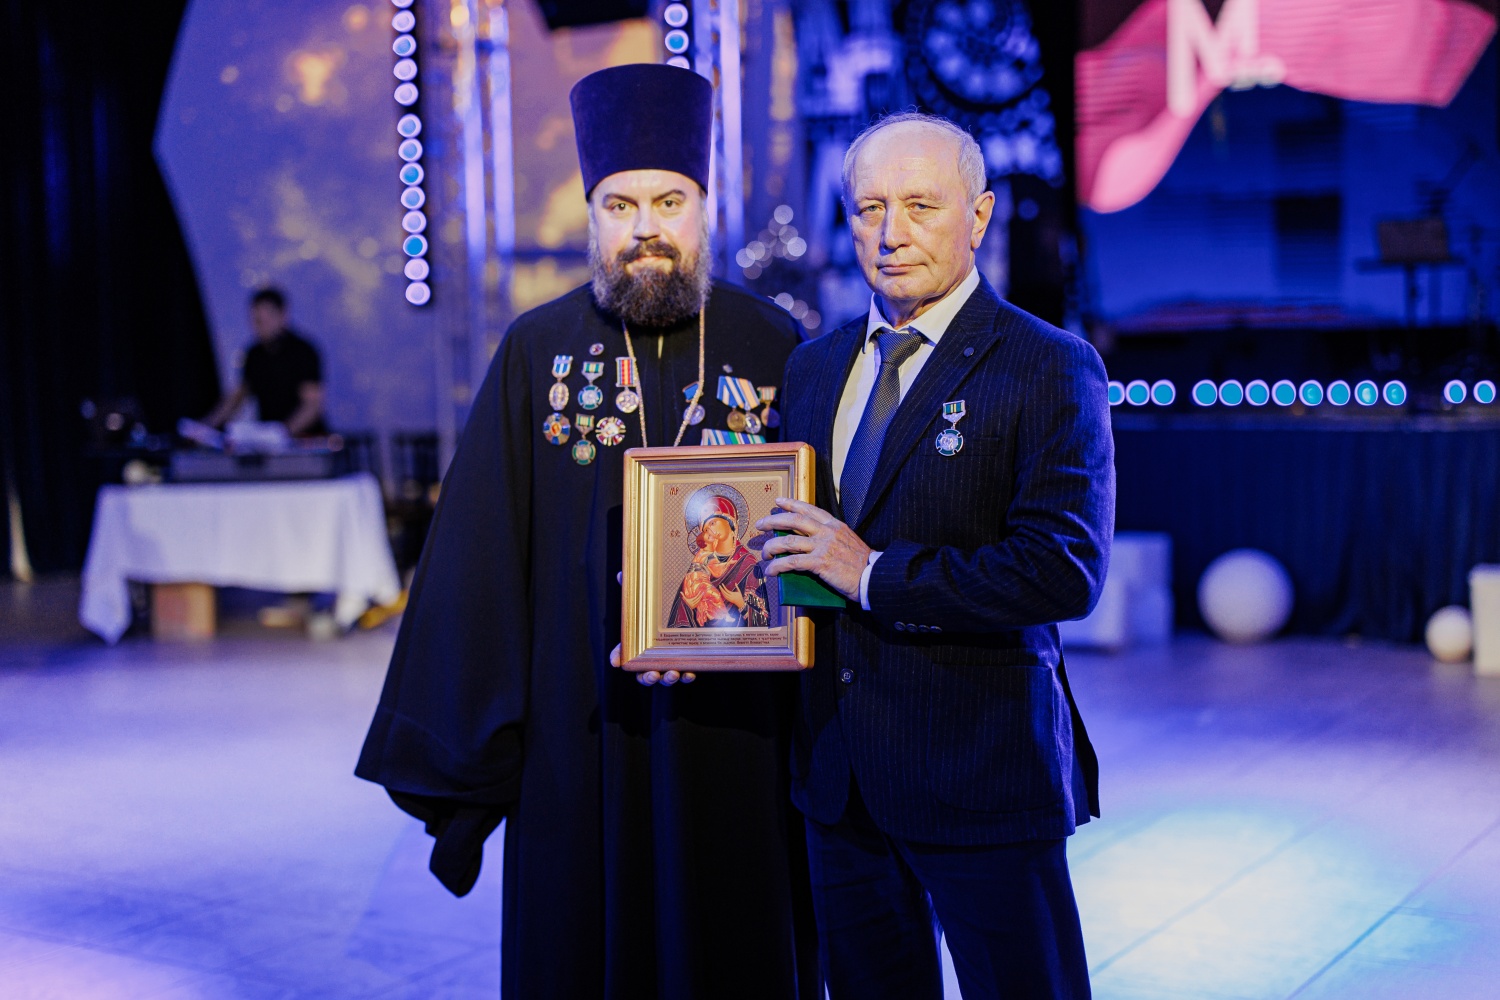  ГК Монострой получила медаль от Владимирской Епархии